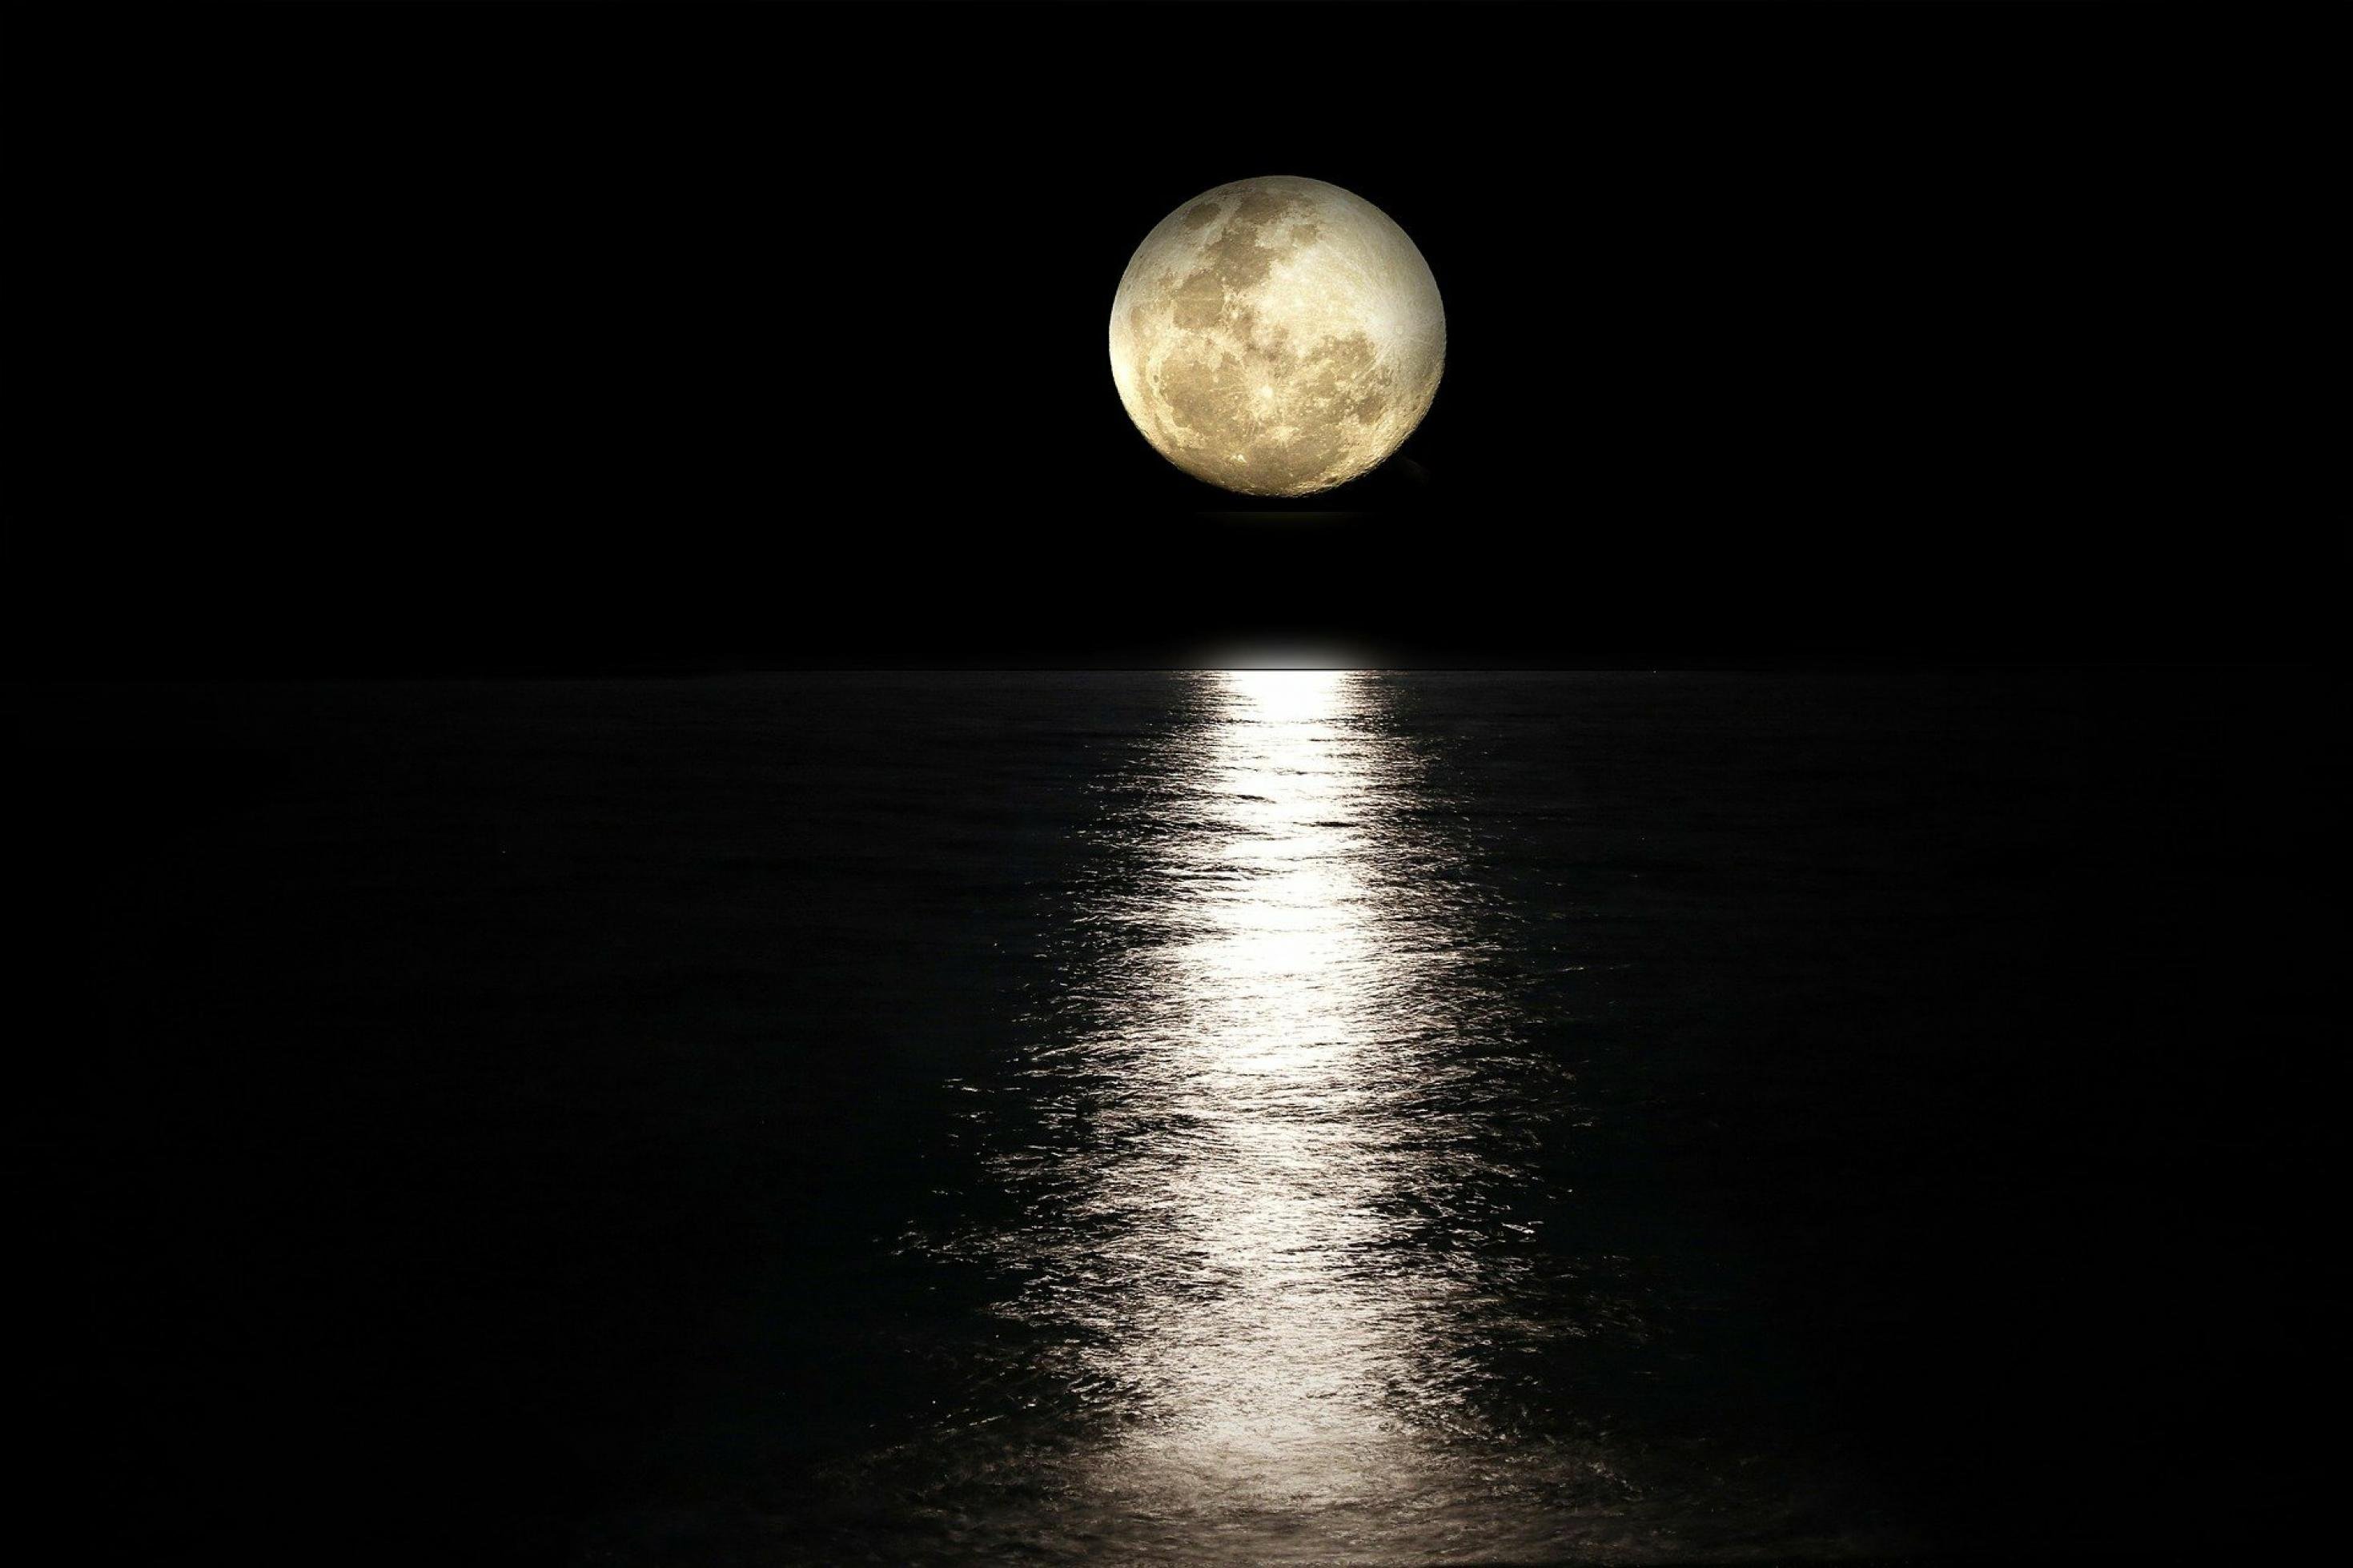 Vollmond über einem Gewässer, auf der Wasseroberfläche spiegelt sich das helle Mondlicht.